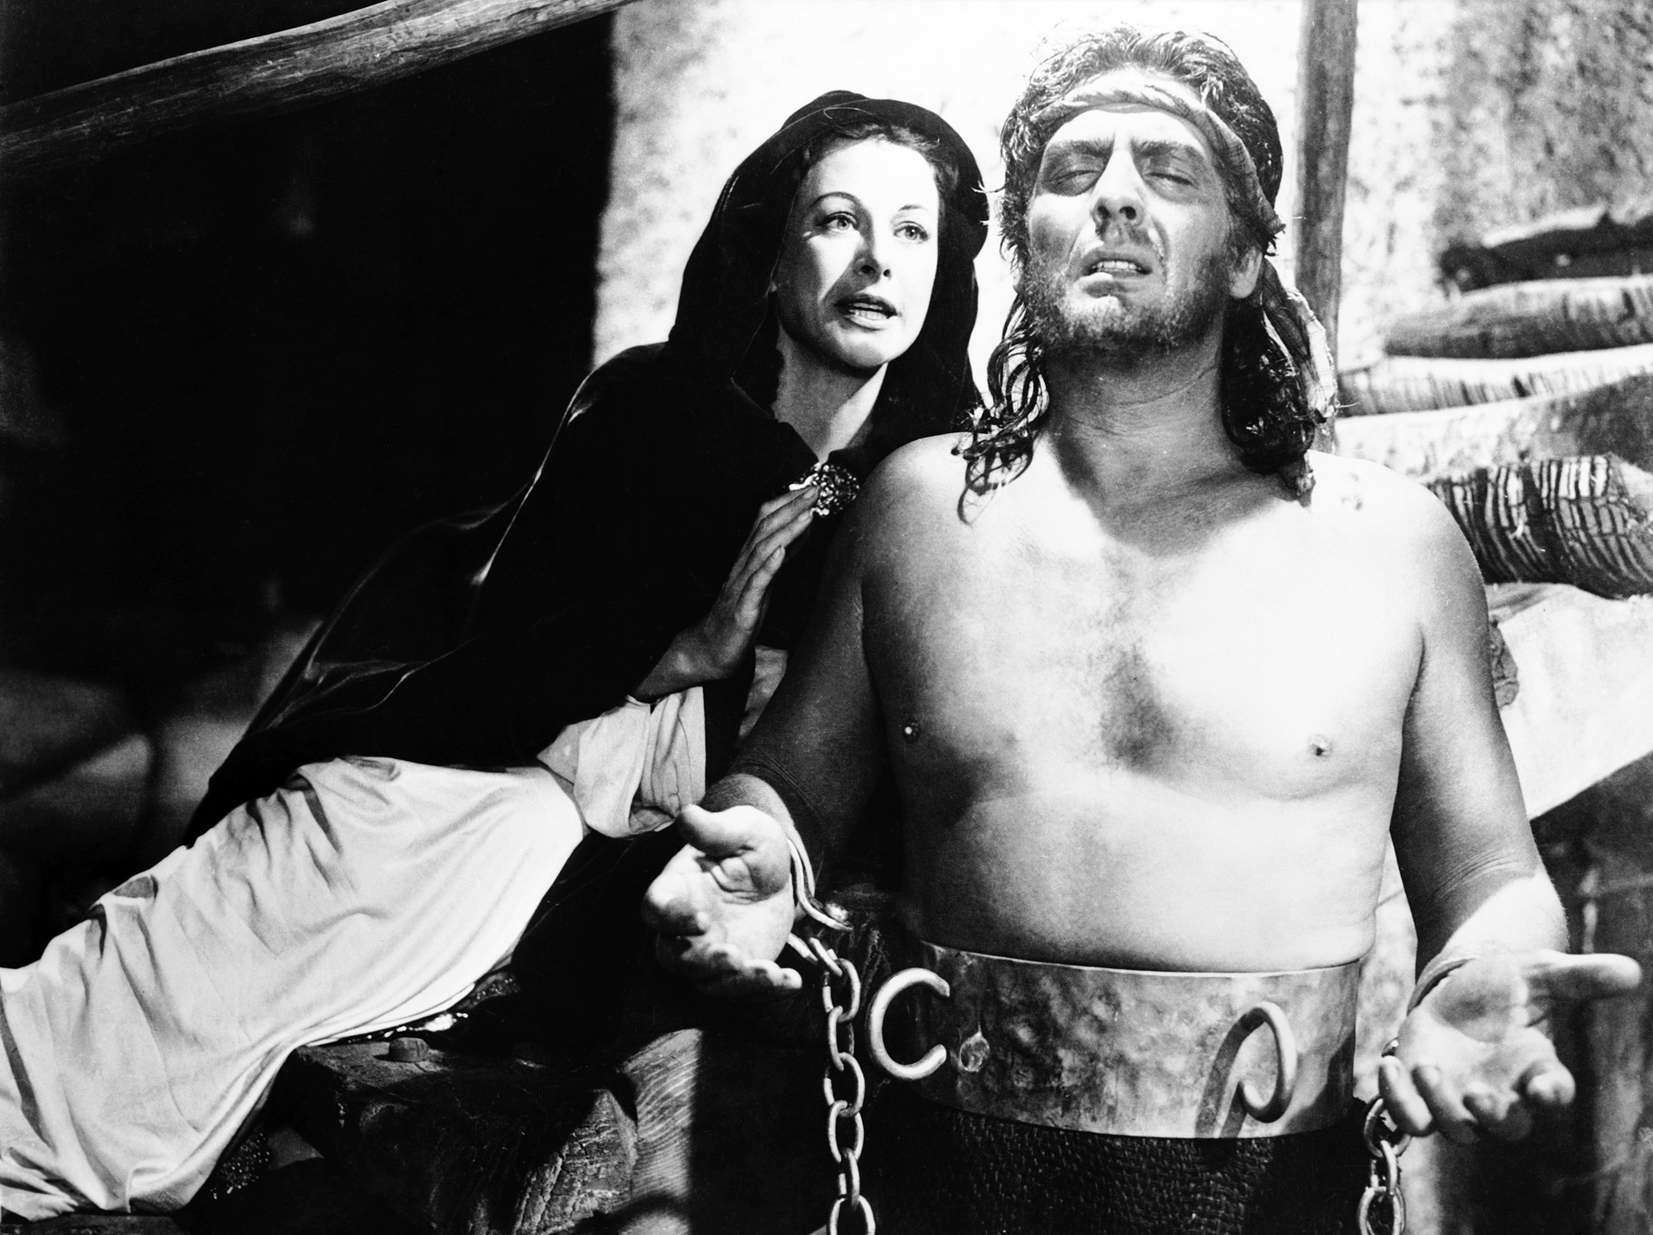 1949 Samson And Delilah